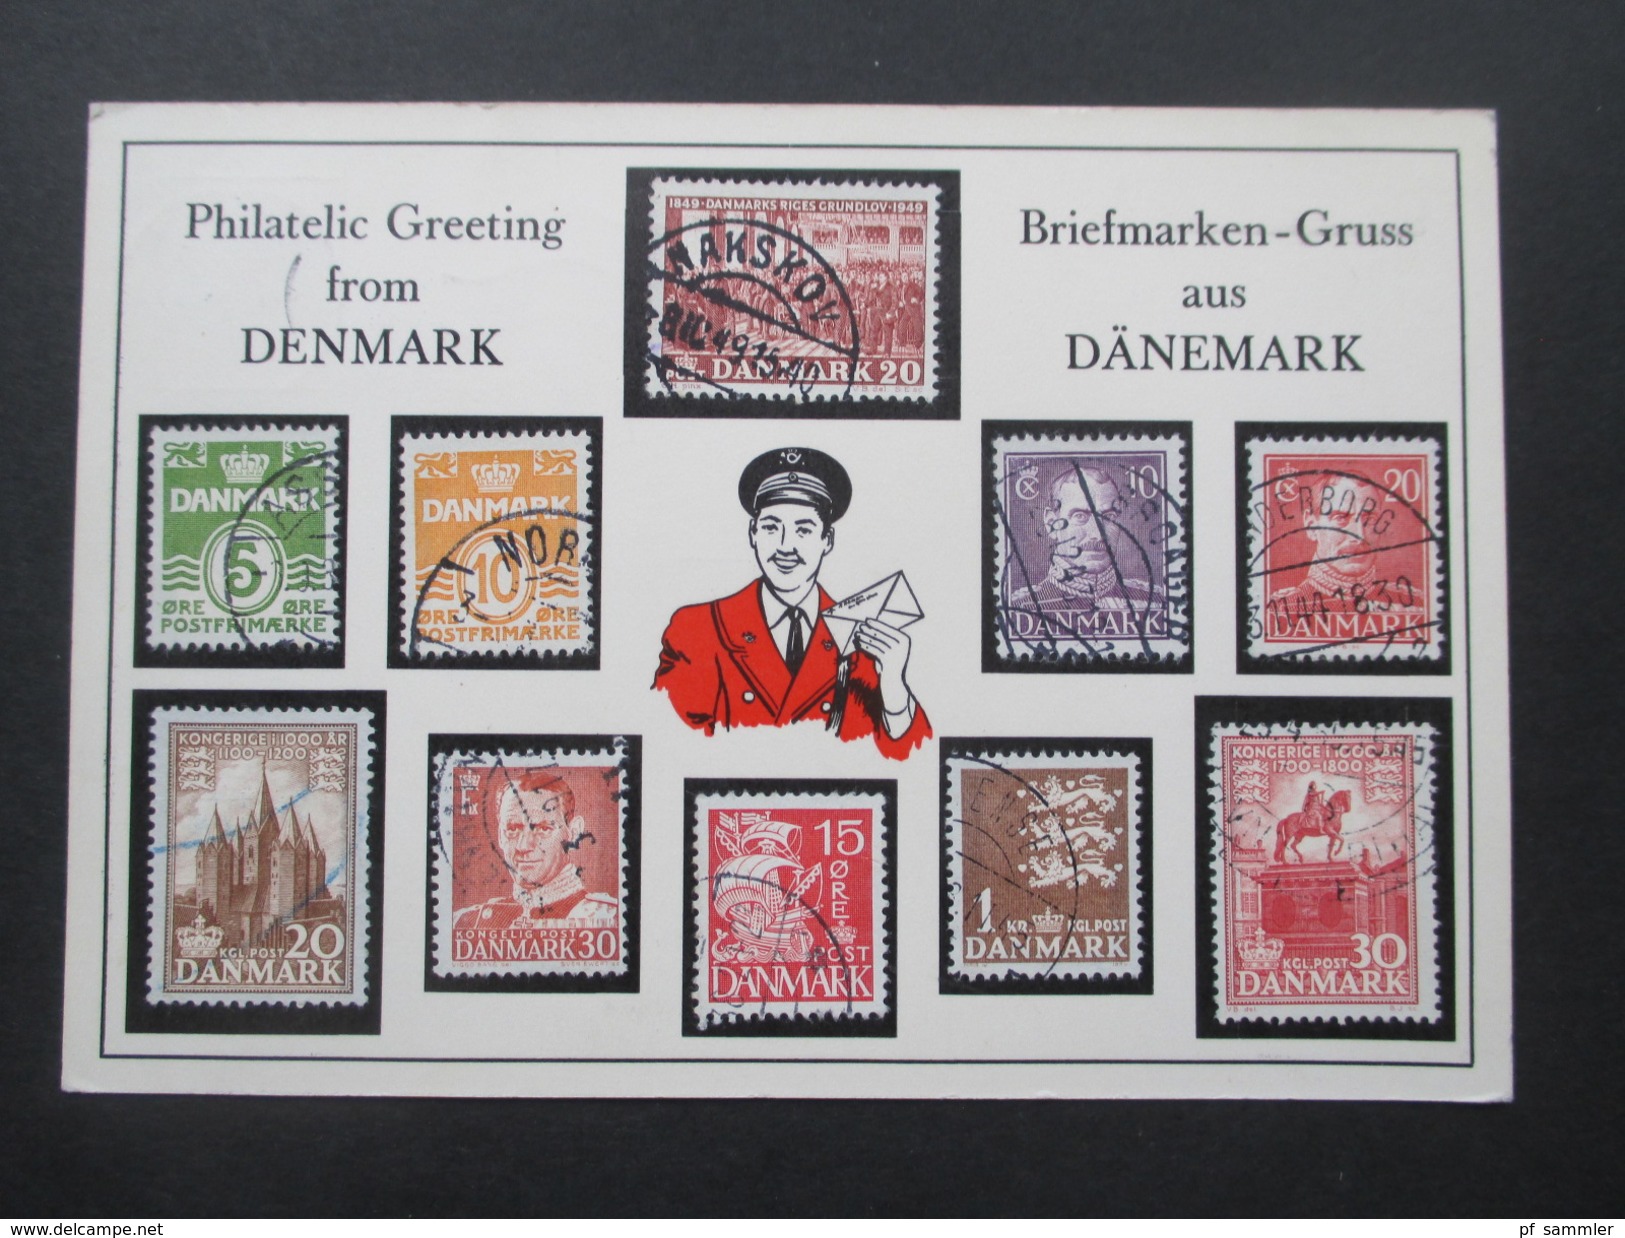 AK 1961 Briefmarken-Gruss Aus Dänemark / Philatelic Greeting From Denmark. Verschiedene Briefmarken Aus Dänemark Aufgekl - Timbres (représentations)